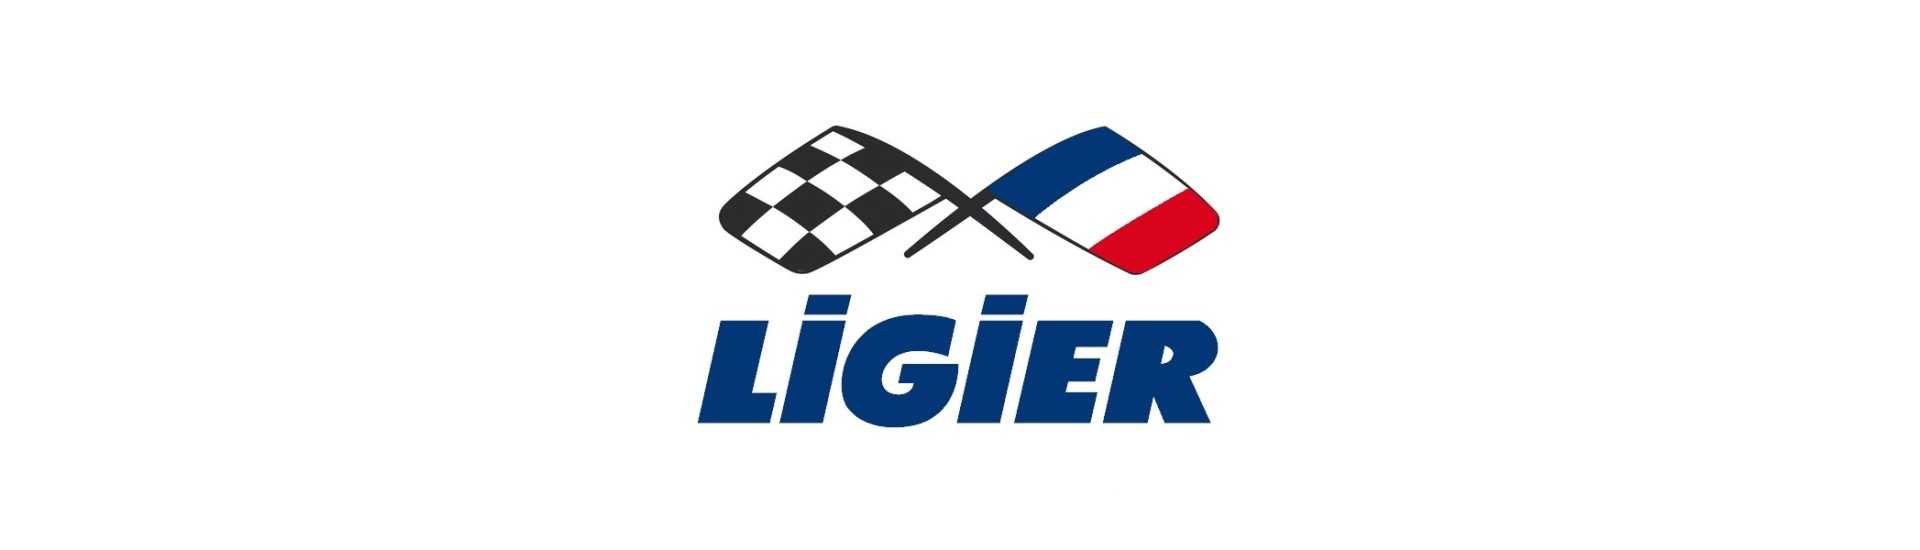 Aschenbecher zum besten Preis für ein Auto ohne Führerschein Ligier